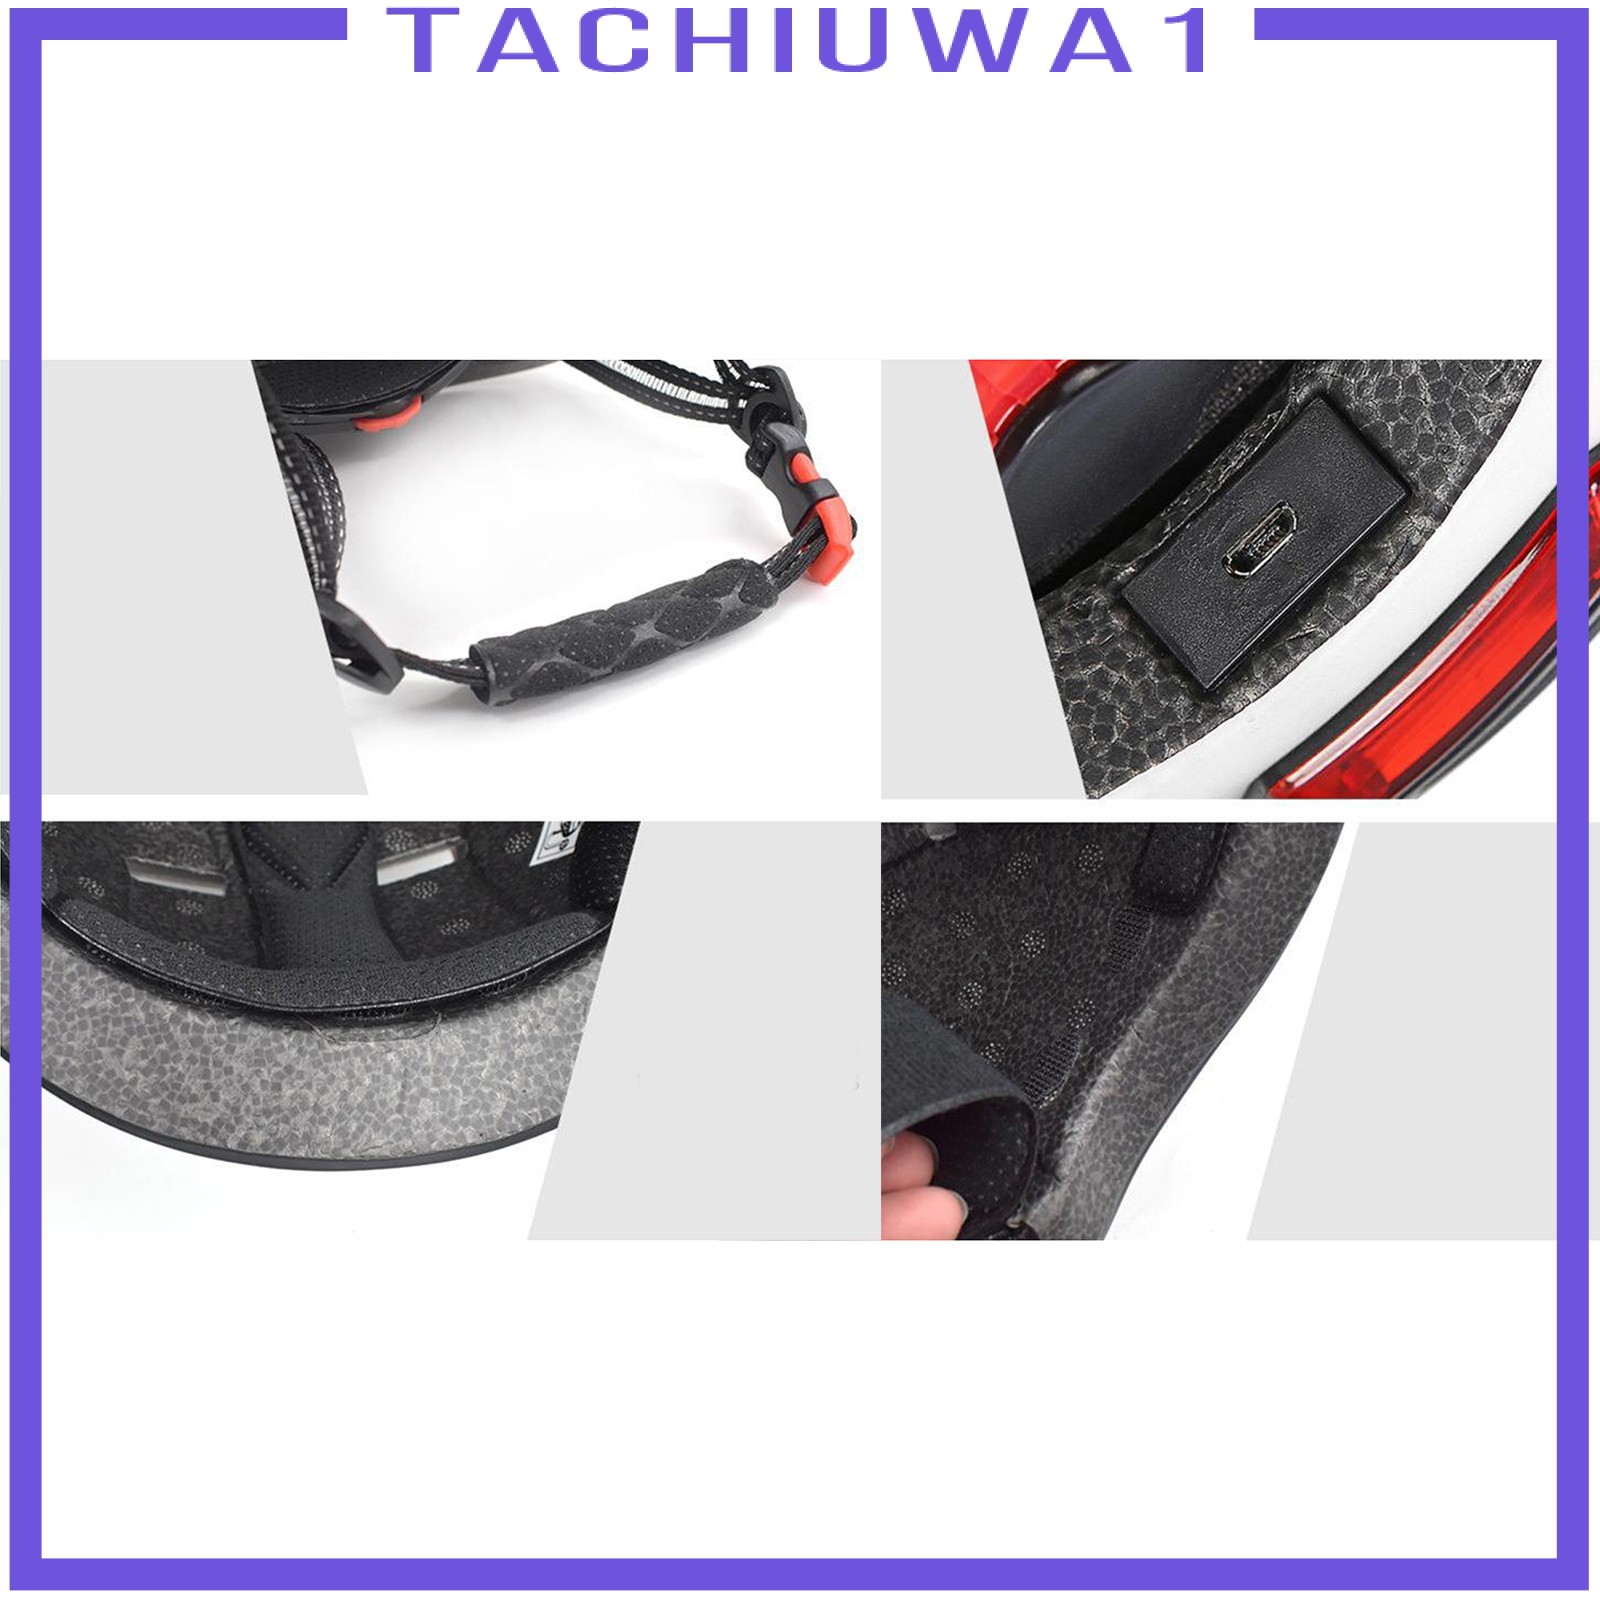 Mũ Bảo Hiểm Xe Đạp Tachiuwa1 Có Đèn 3 Chế Độ Siêu Nhẹ Thoáng Khí Chống Thấm Nước